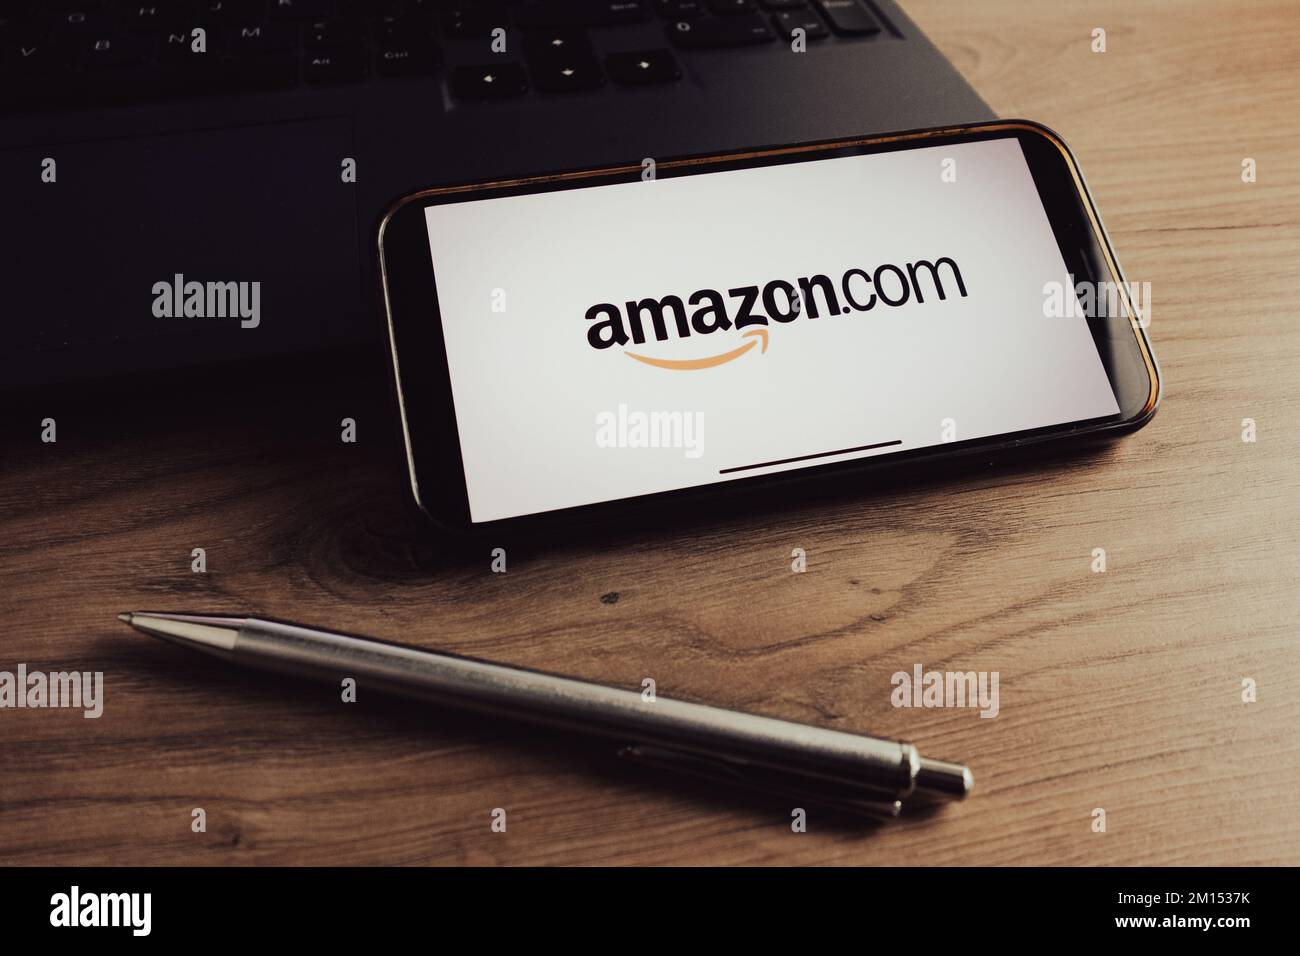 KONSKIE, POLONIA - 17 de septiembre de 2022: El logotipo Amazon.com aparece en la pantalla del smartphone de la oficina. Amazon es una compañía de comercio electrónico estadounidense Foto de stock